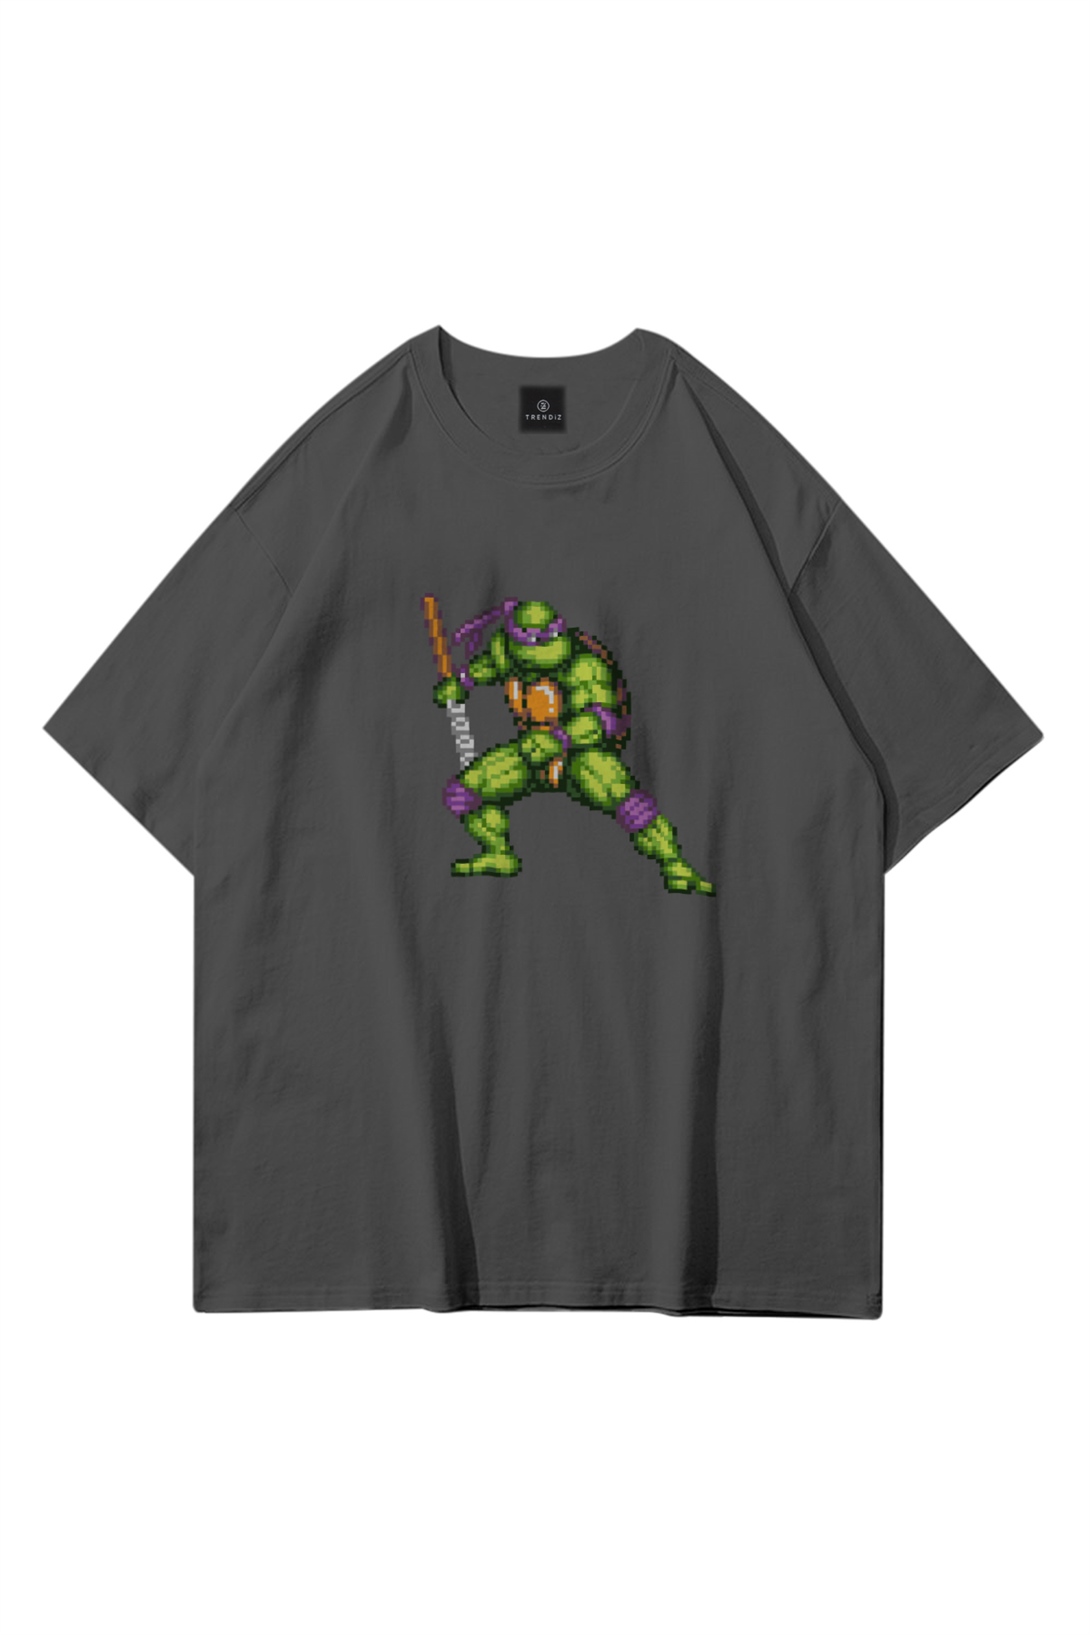 Trendiz Unisex Donatello Ninja Turtles Antrasit Tshirt